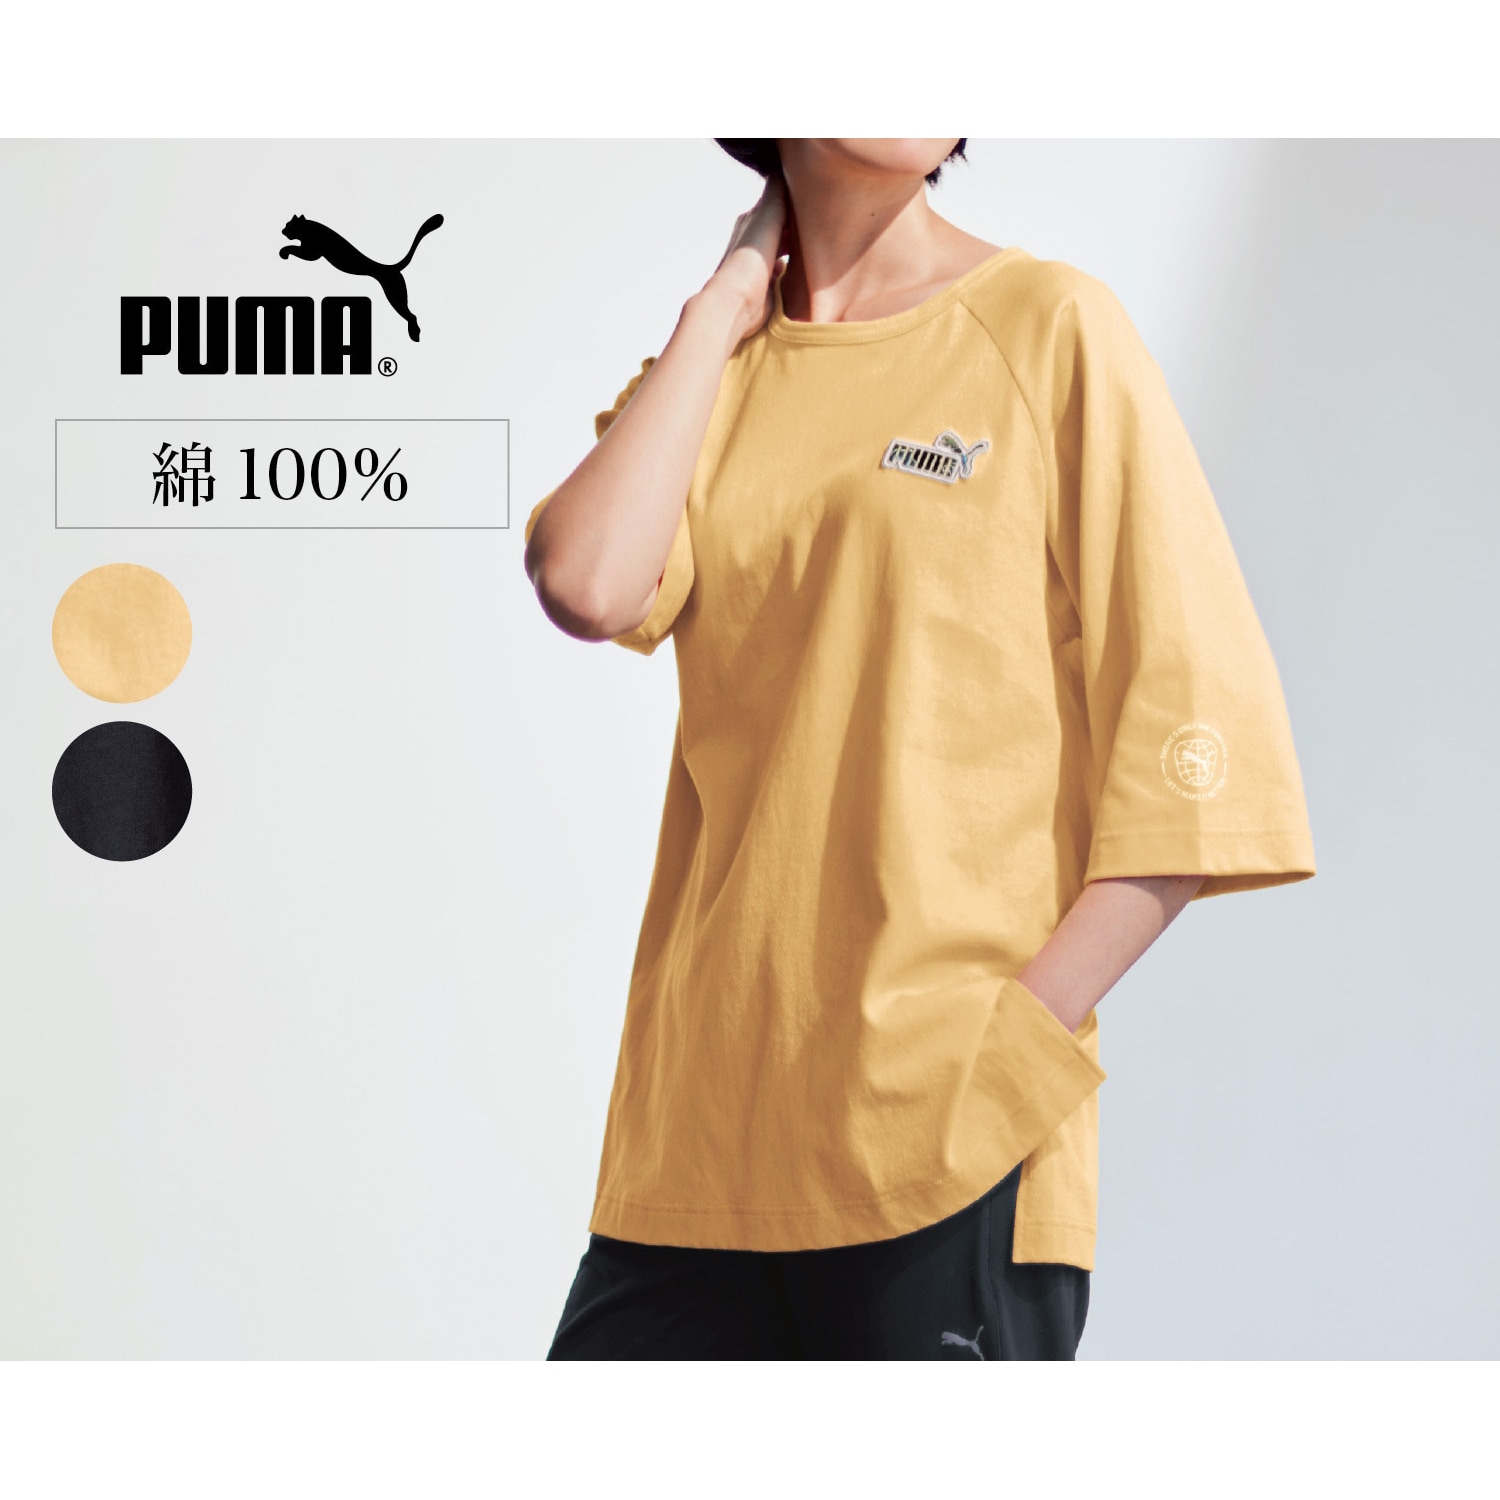 PUMA プーマ レディーススポーツTシャツお値下げ - ダンス